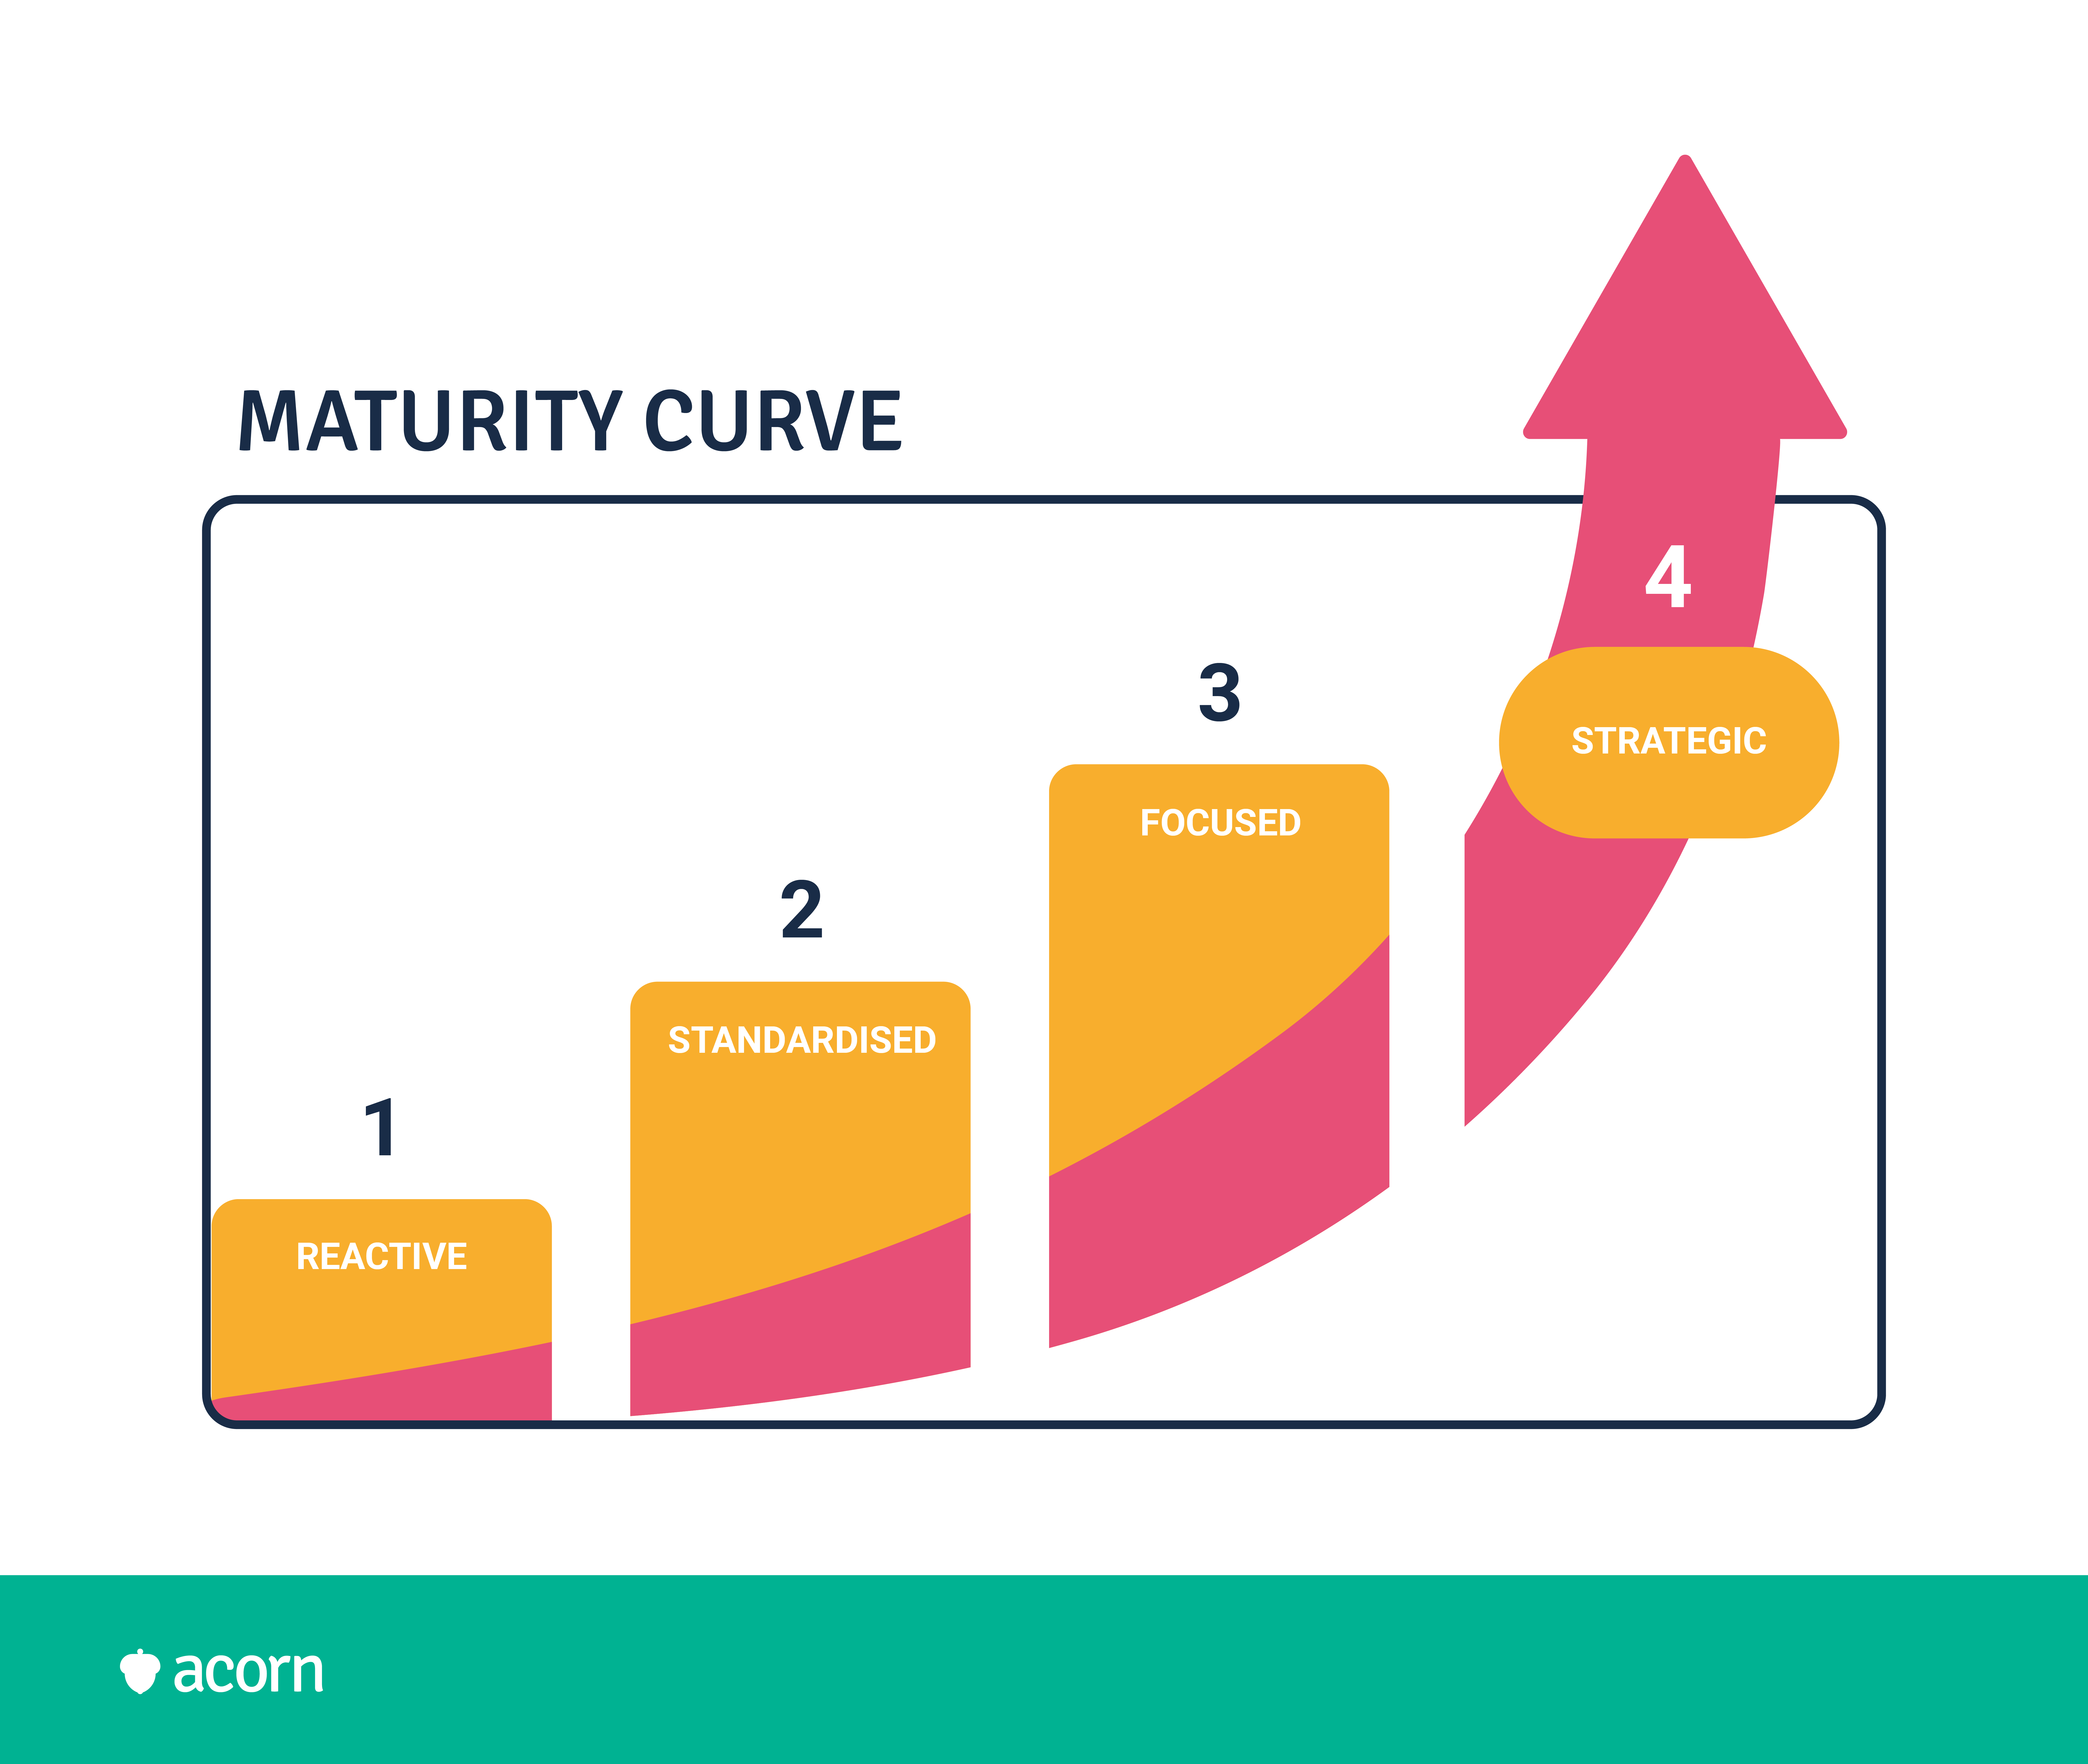 The maturity curve model